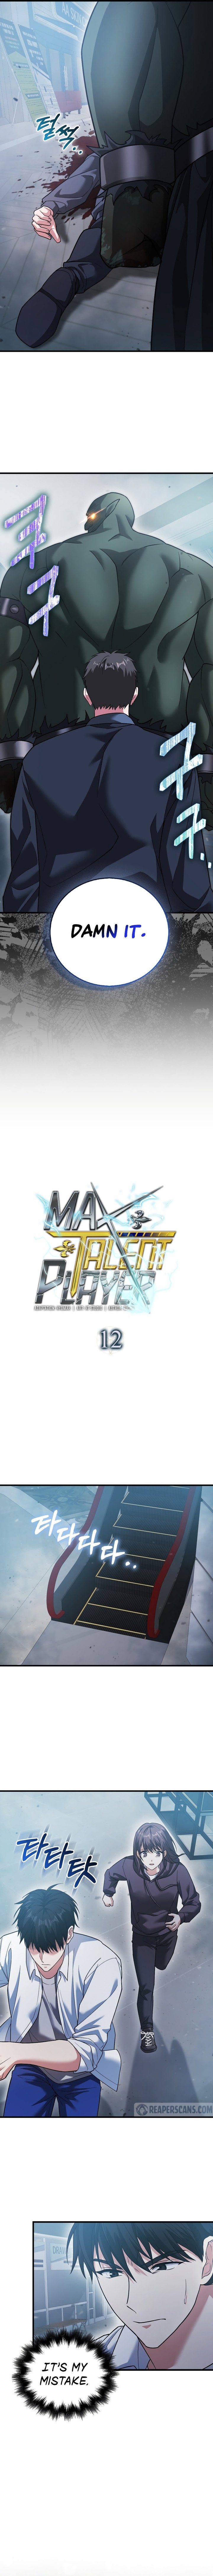 Max Talent Player 12 7